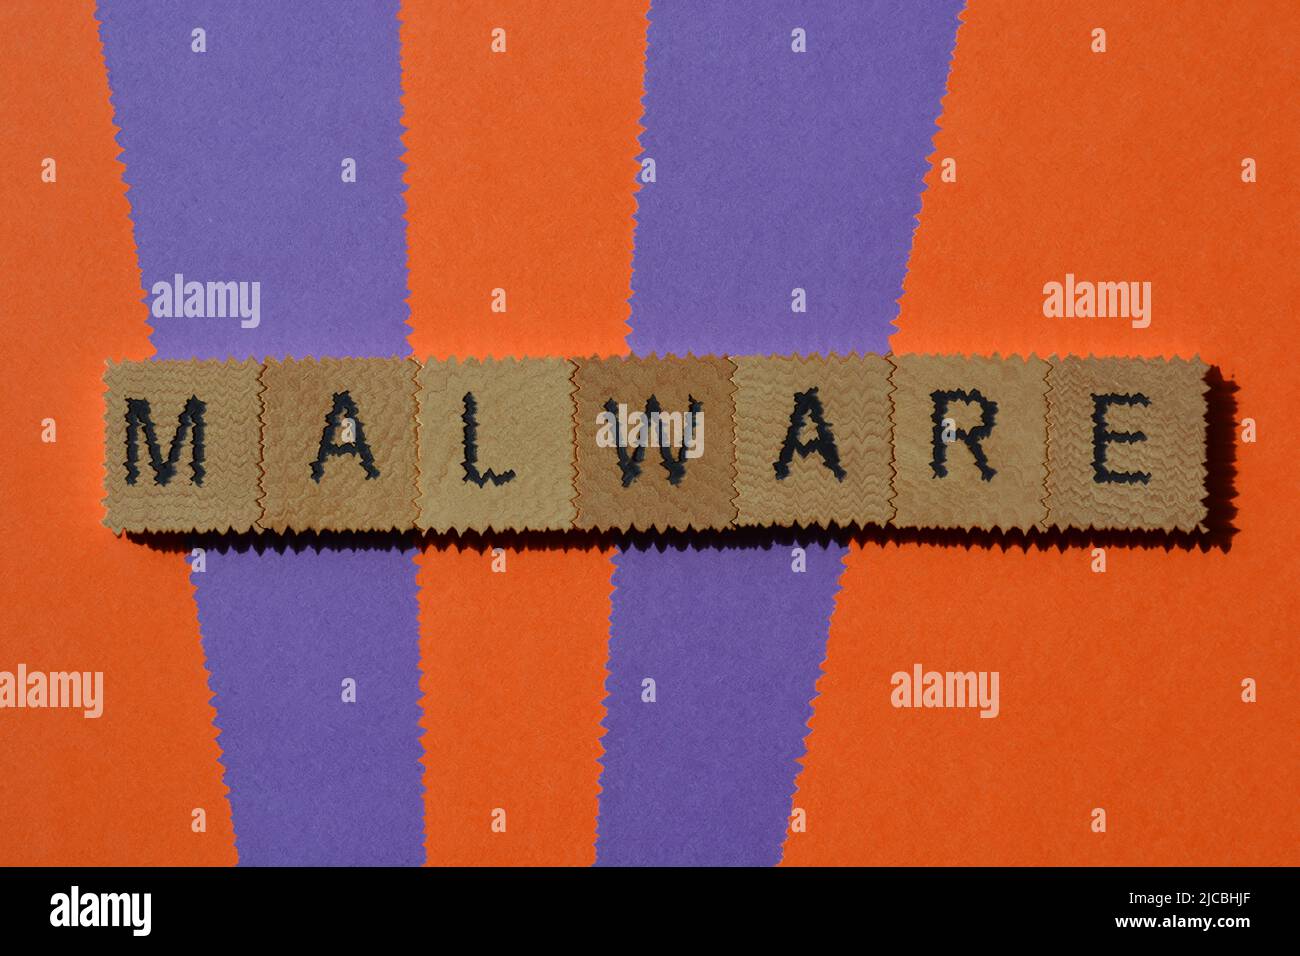 Malware, palabra en letras de alfabeto de madera aisladas en el fondo con efectos añadidos Foto de stock